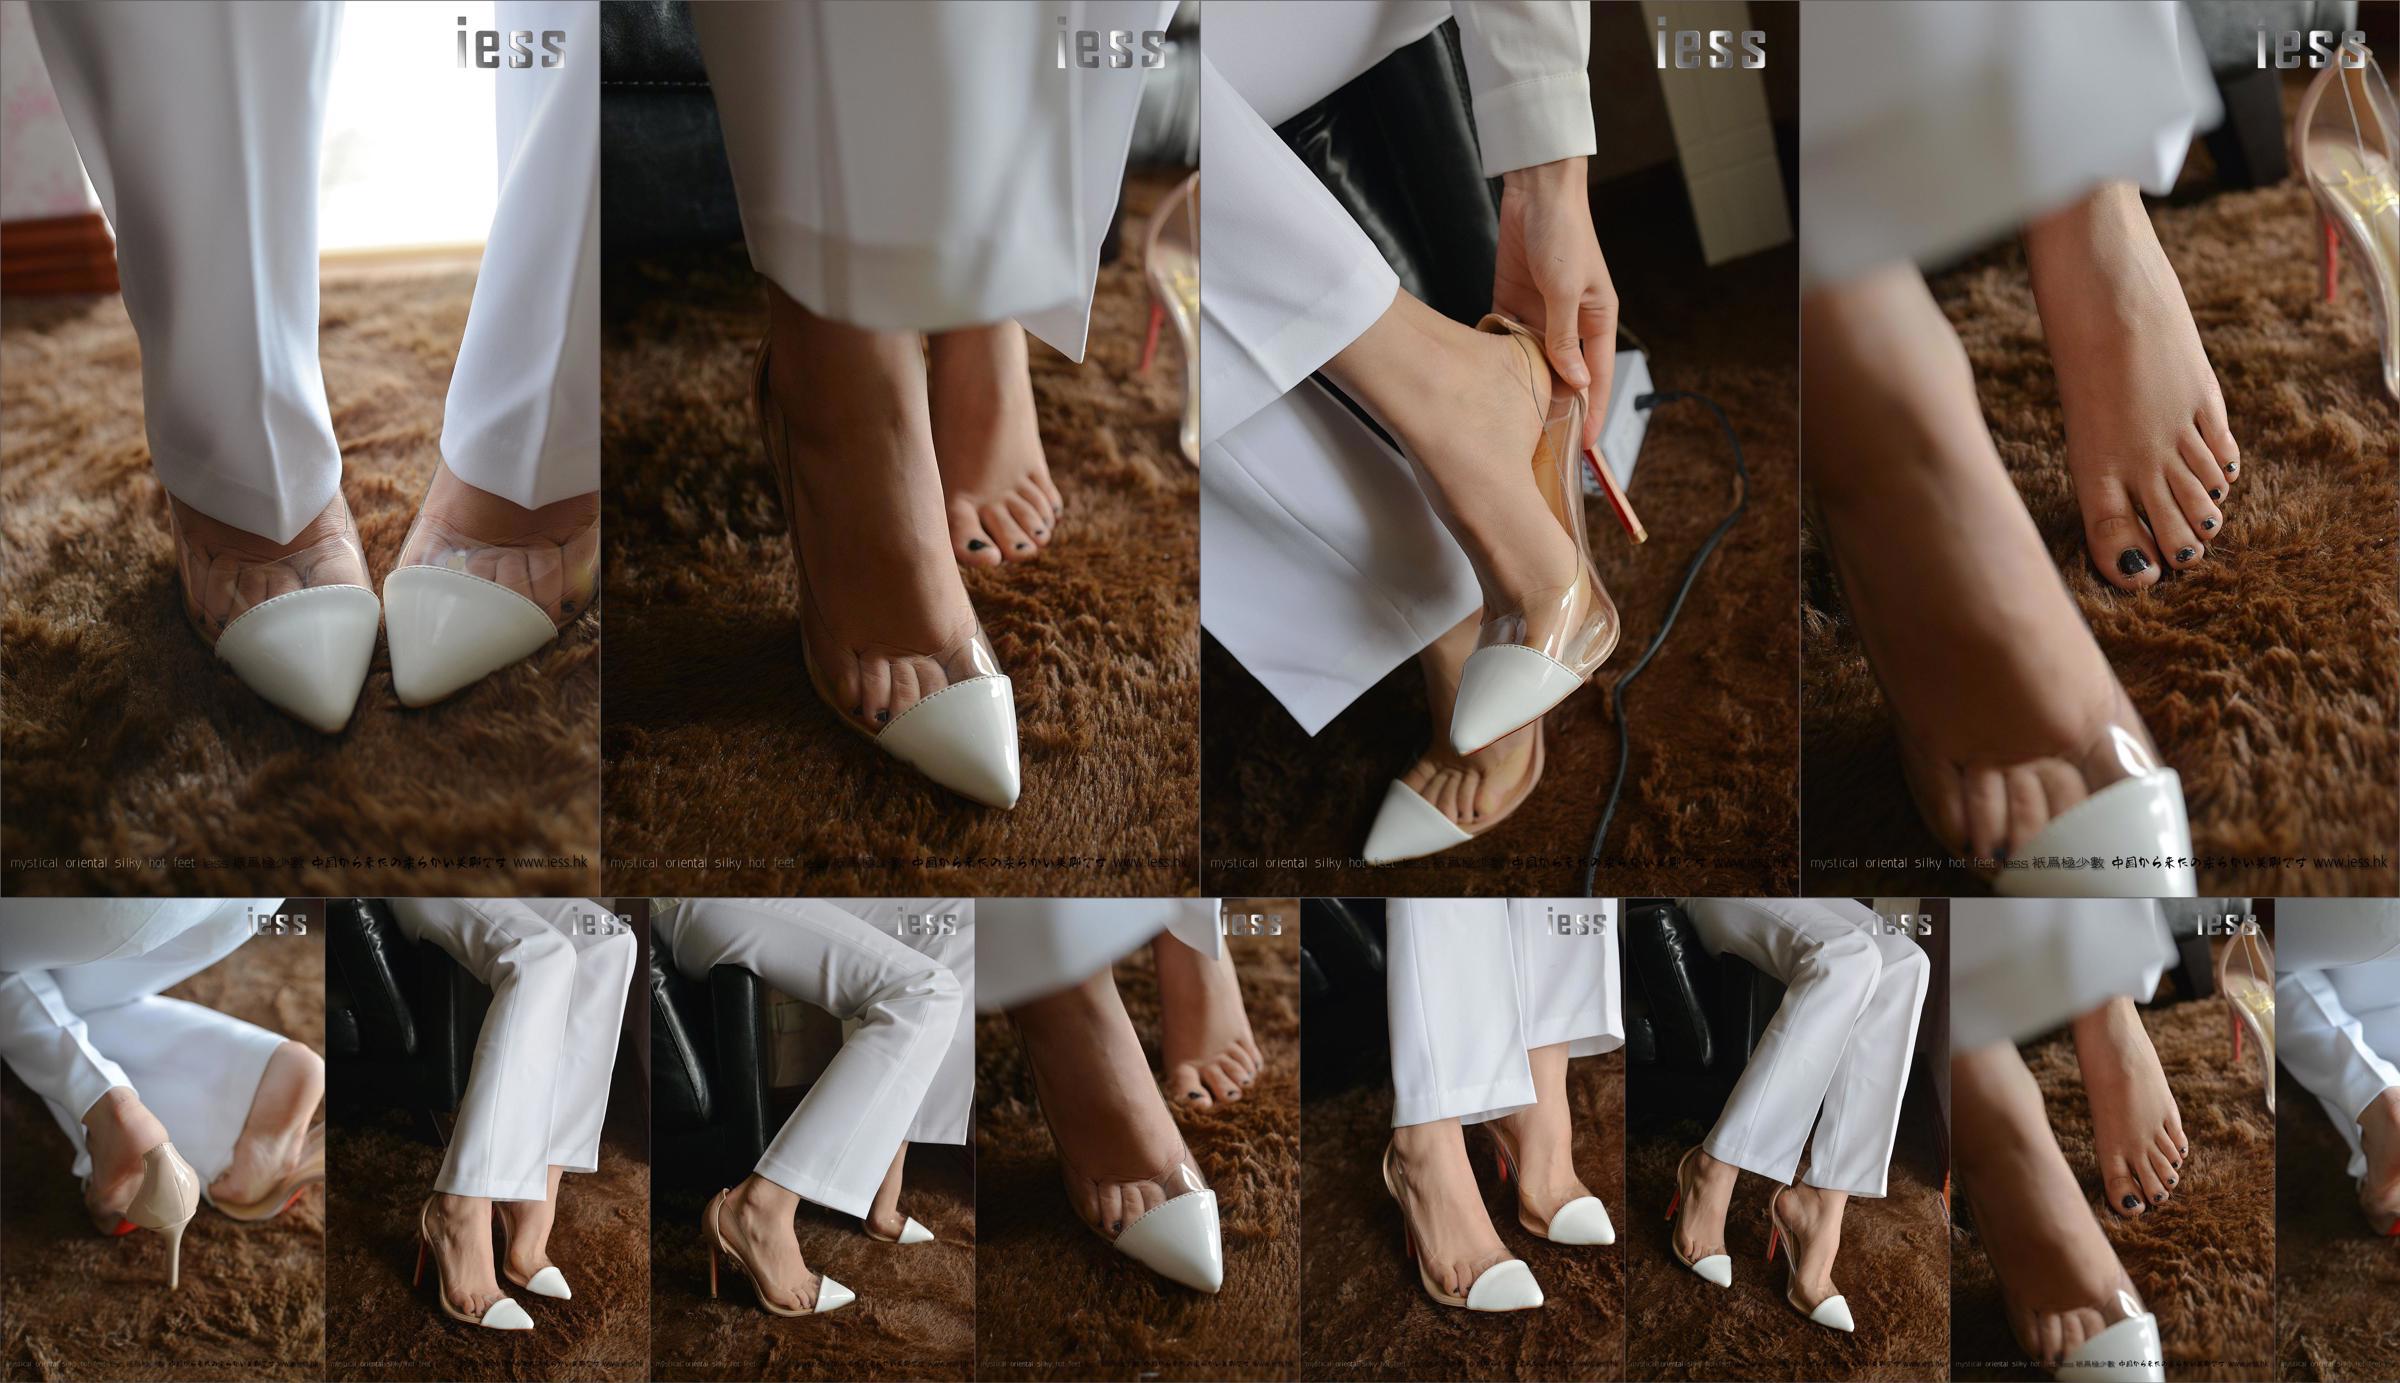 Silky Foot Bento 058 Hồi hộp "Bộ sưu tập-Giày cao gót chân trần" [IESS Wei Si Fun Xiang] No.d1df49 Trang 8